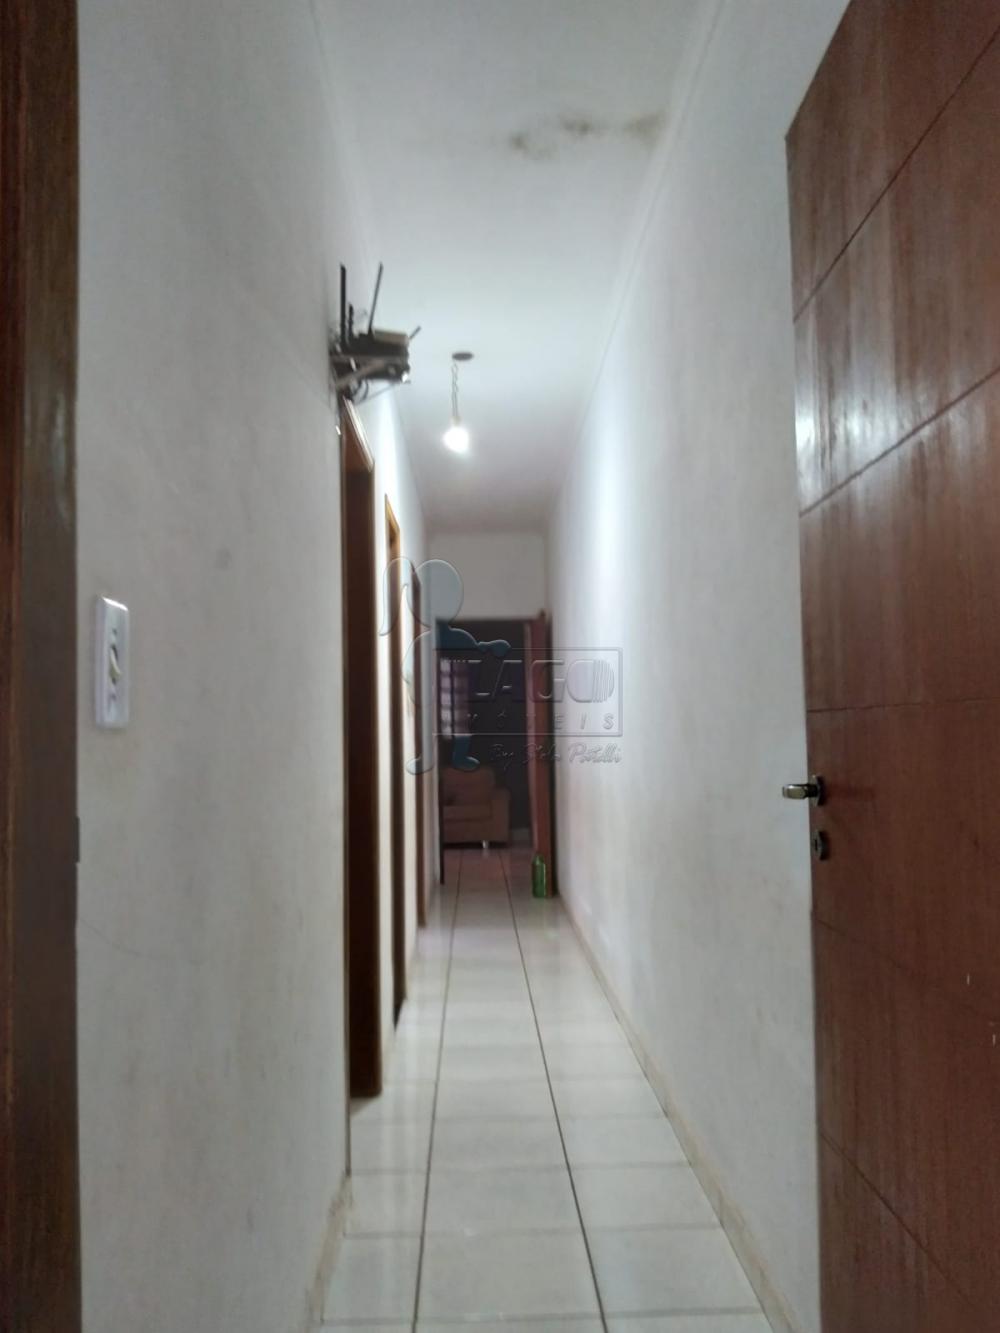 Comprar Casas / Padrão em Ribeirão Preto R$ 370.000,00 - Foto 2